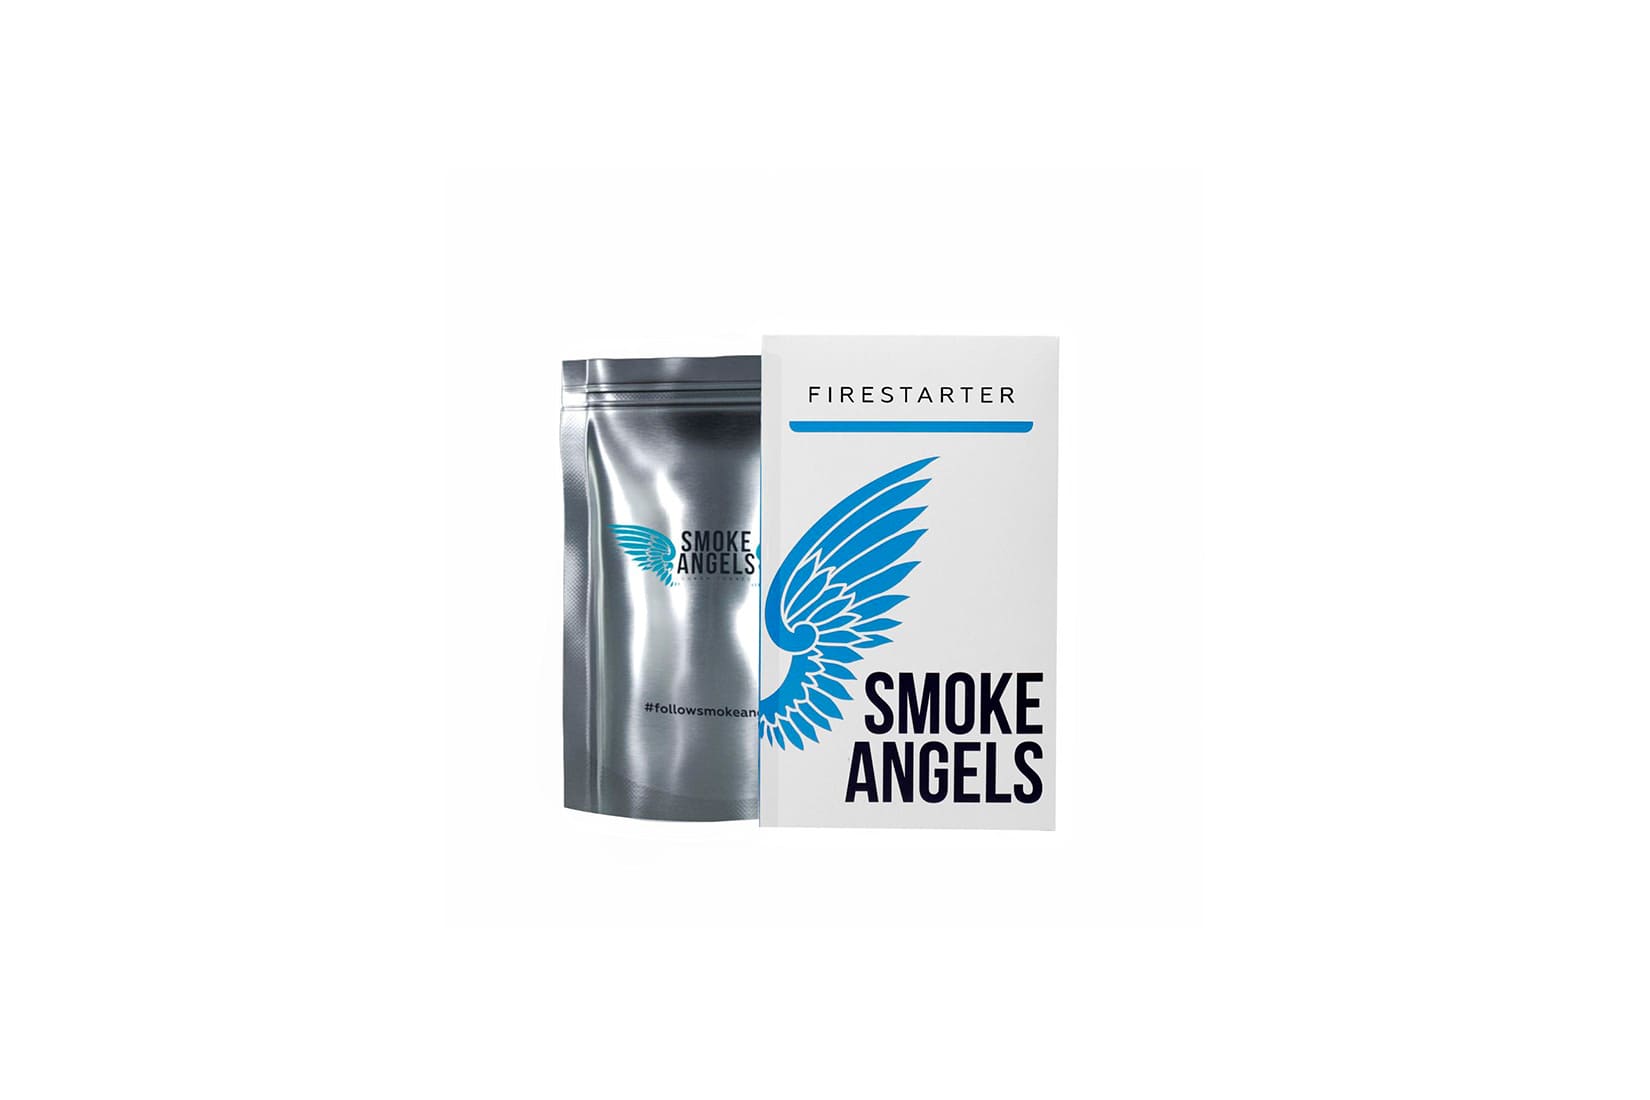 Табак для кальяна Smoke Angels FIRESTARTER: описание, вкусы, миксы, отзывы